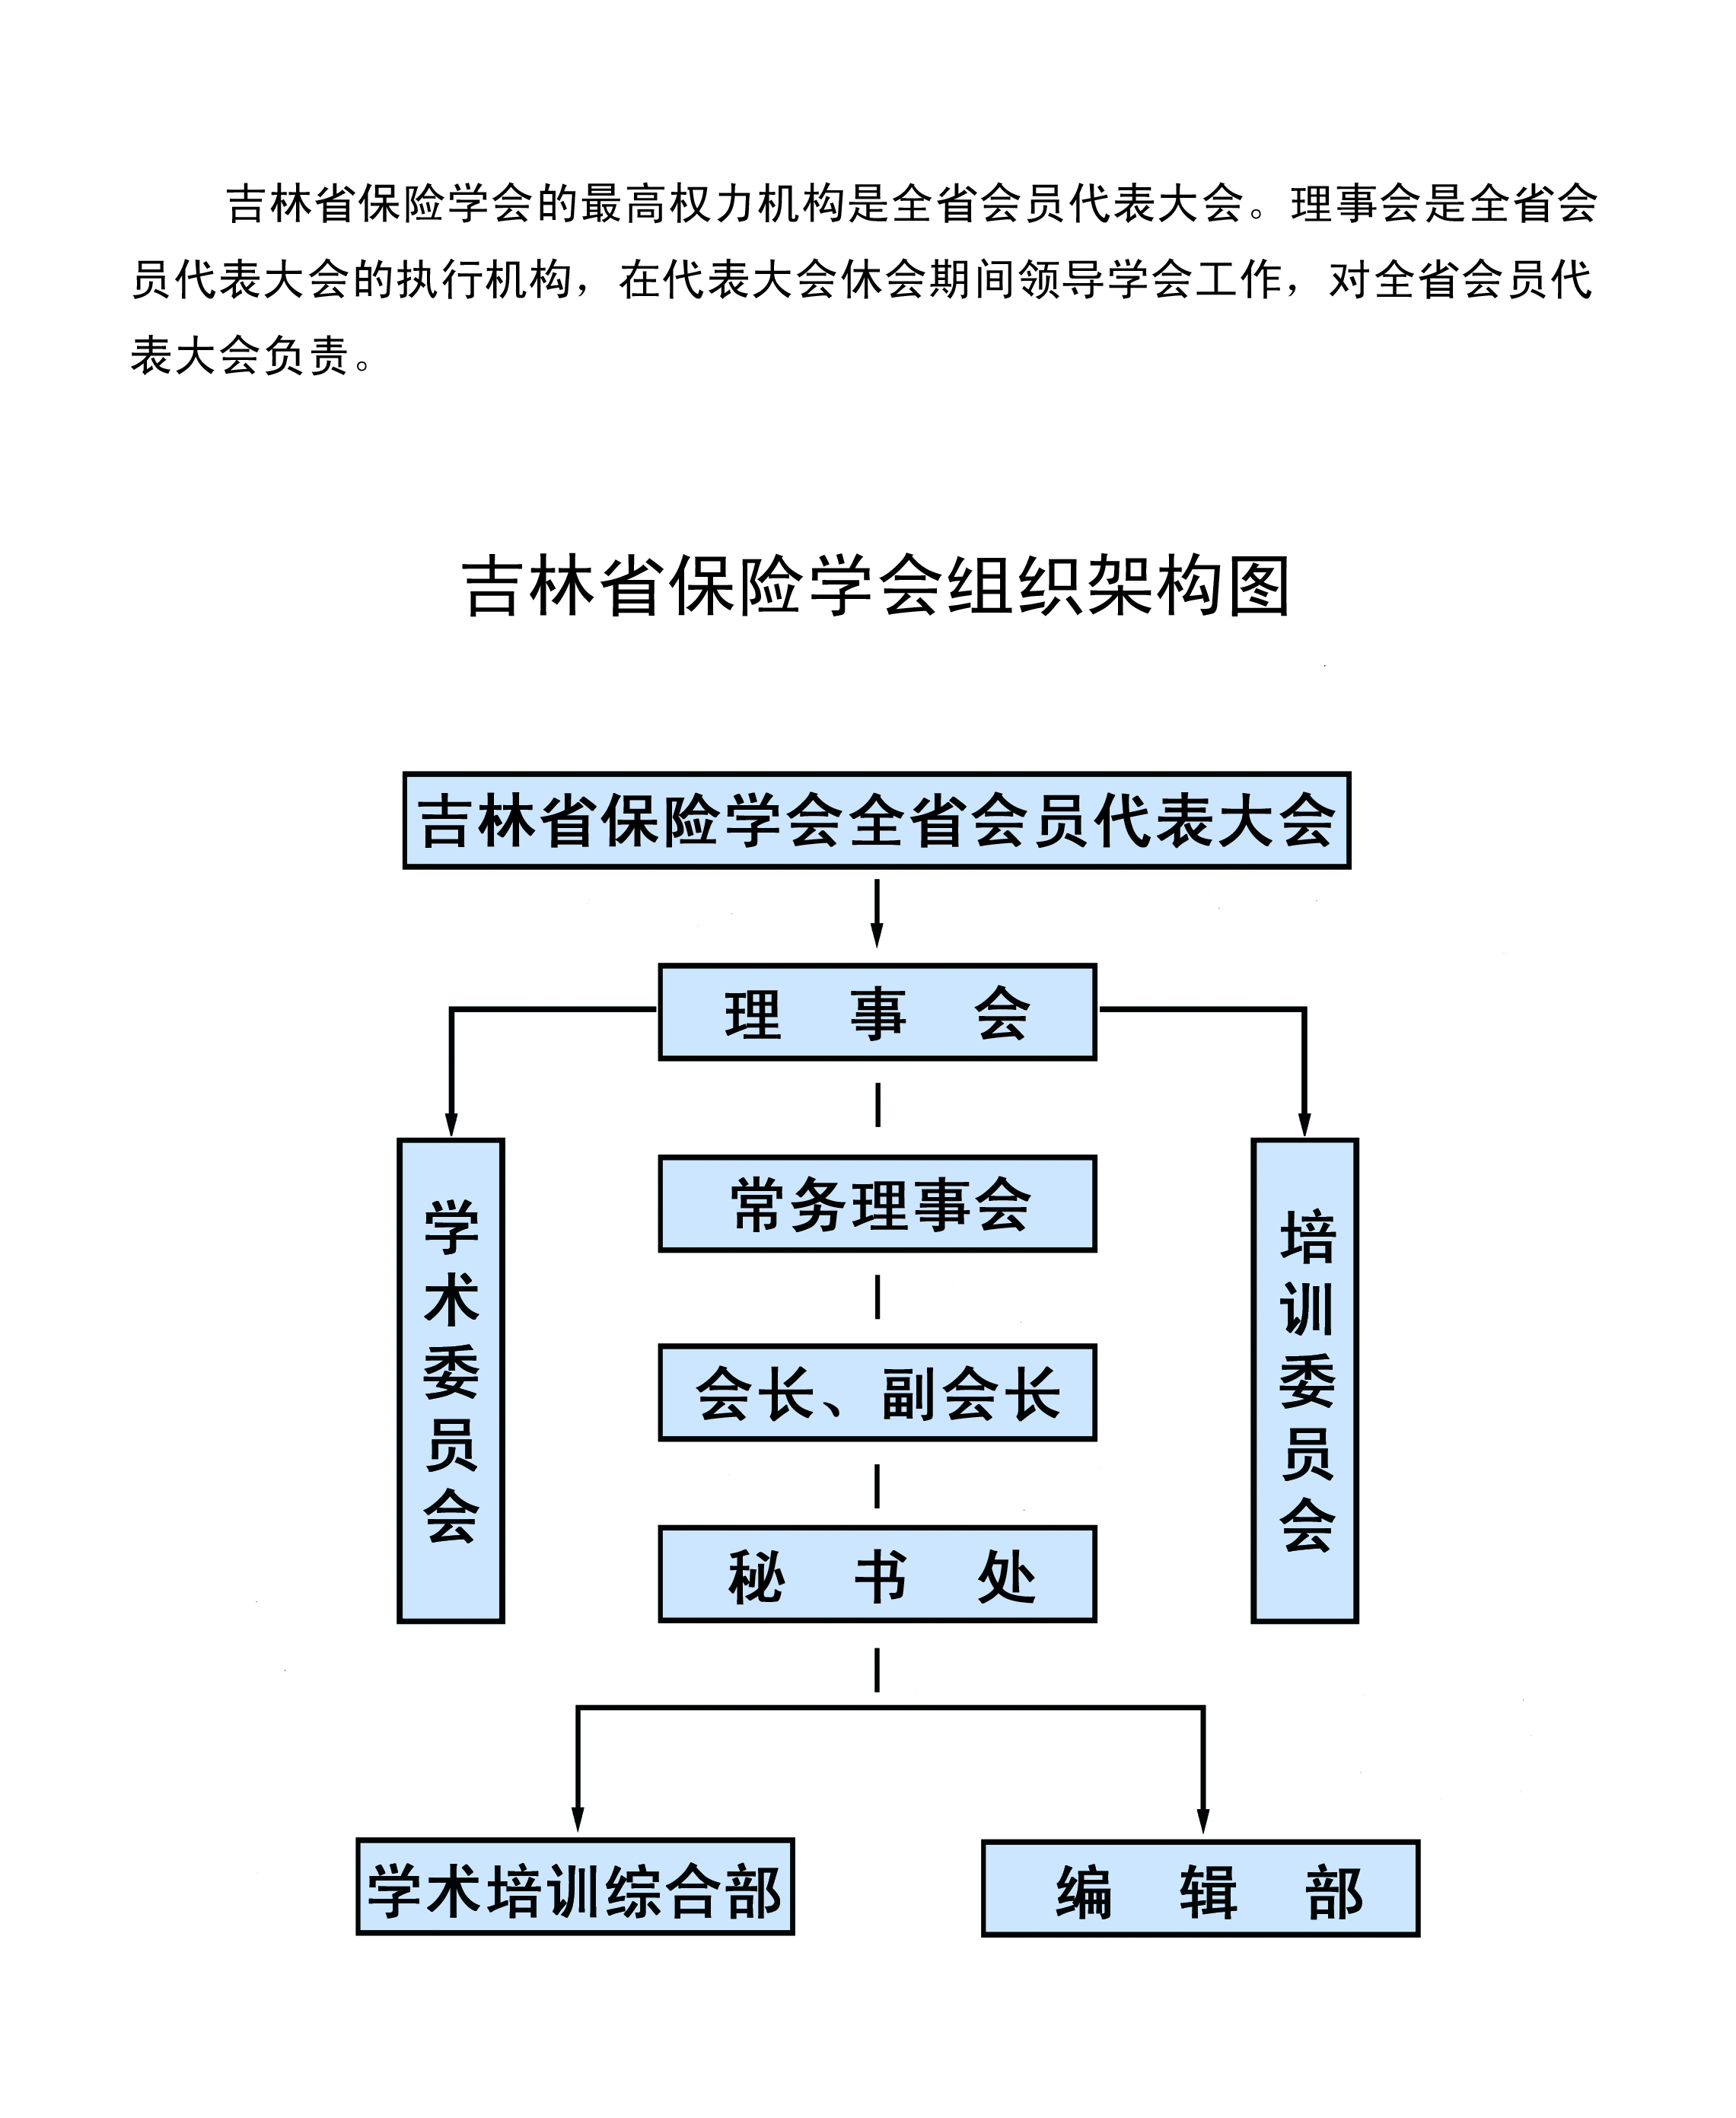 吉林省保险学会组织架构图.jpg